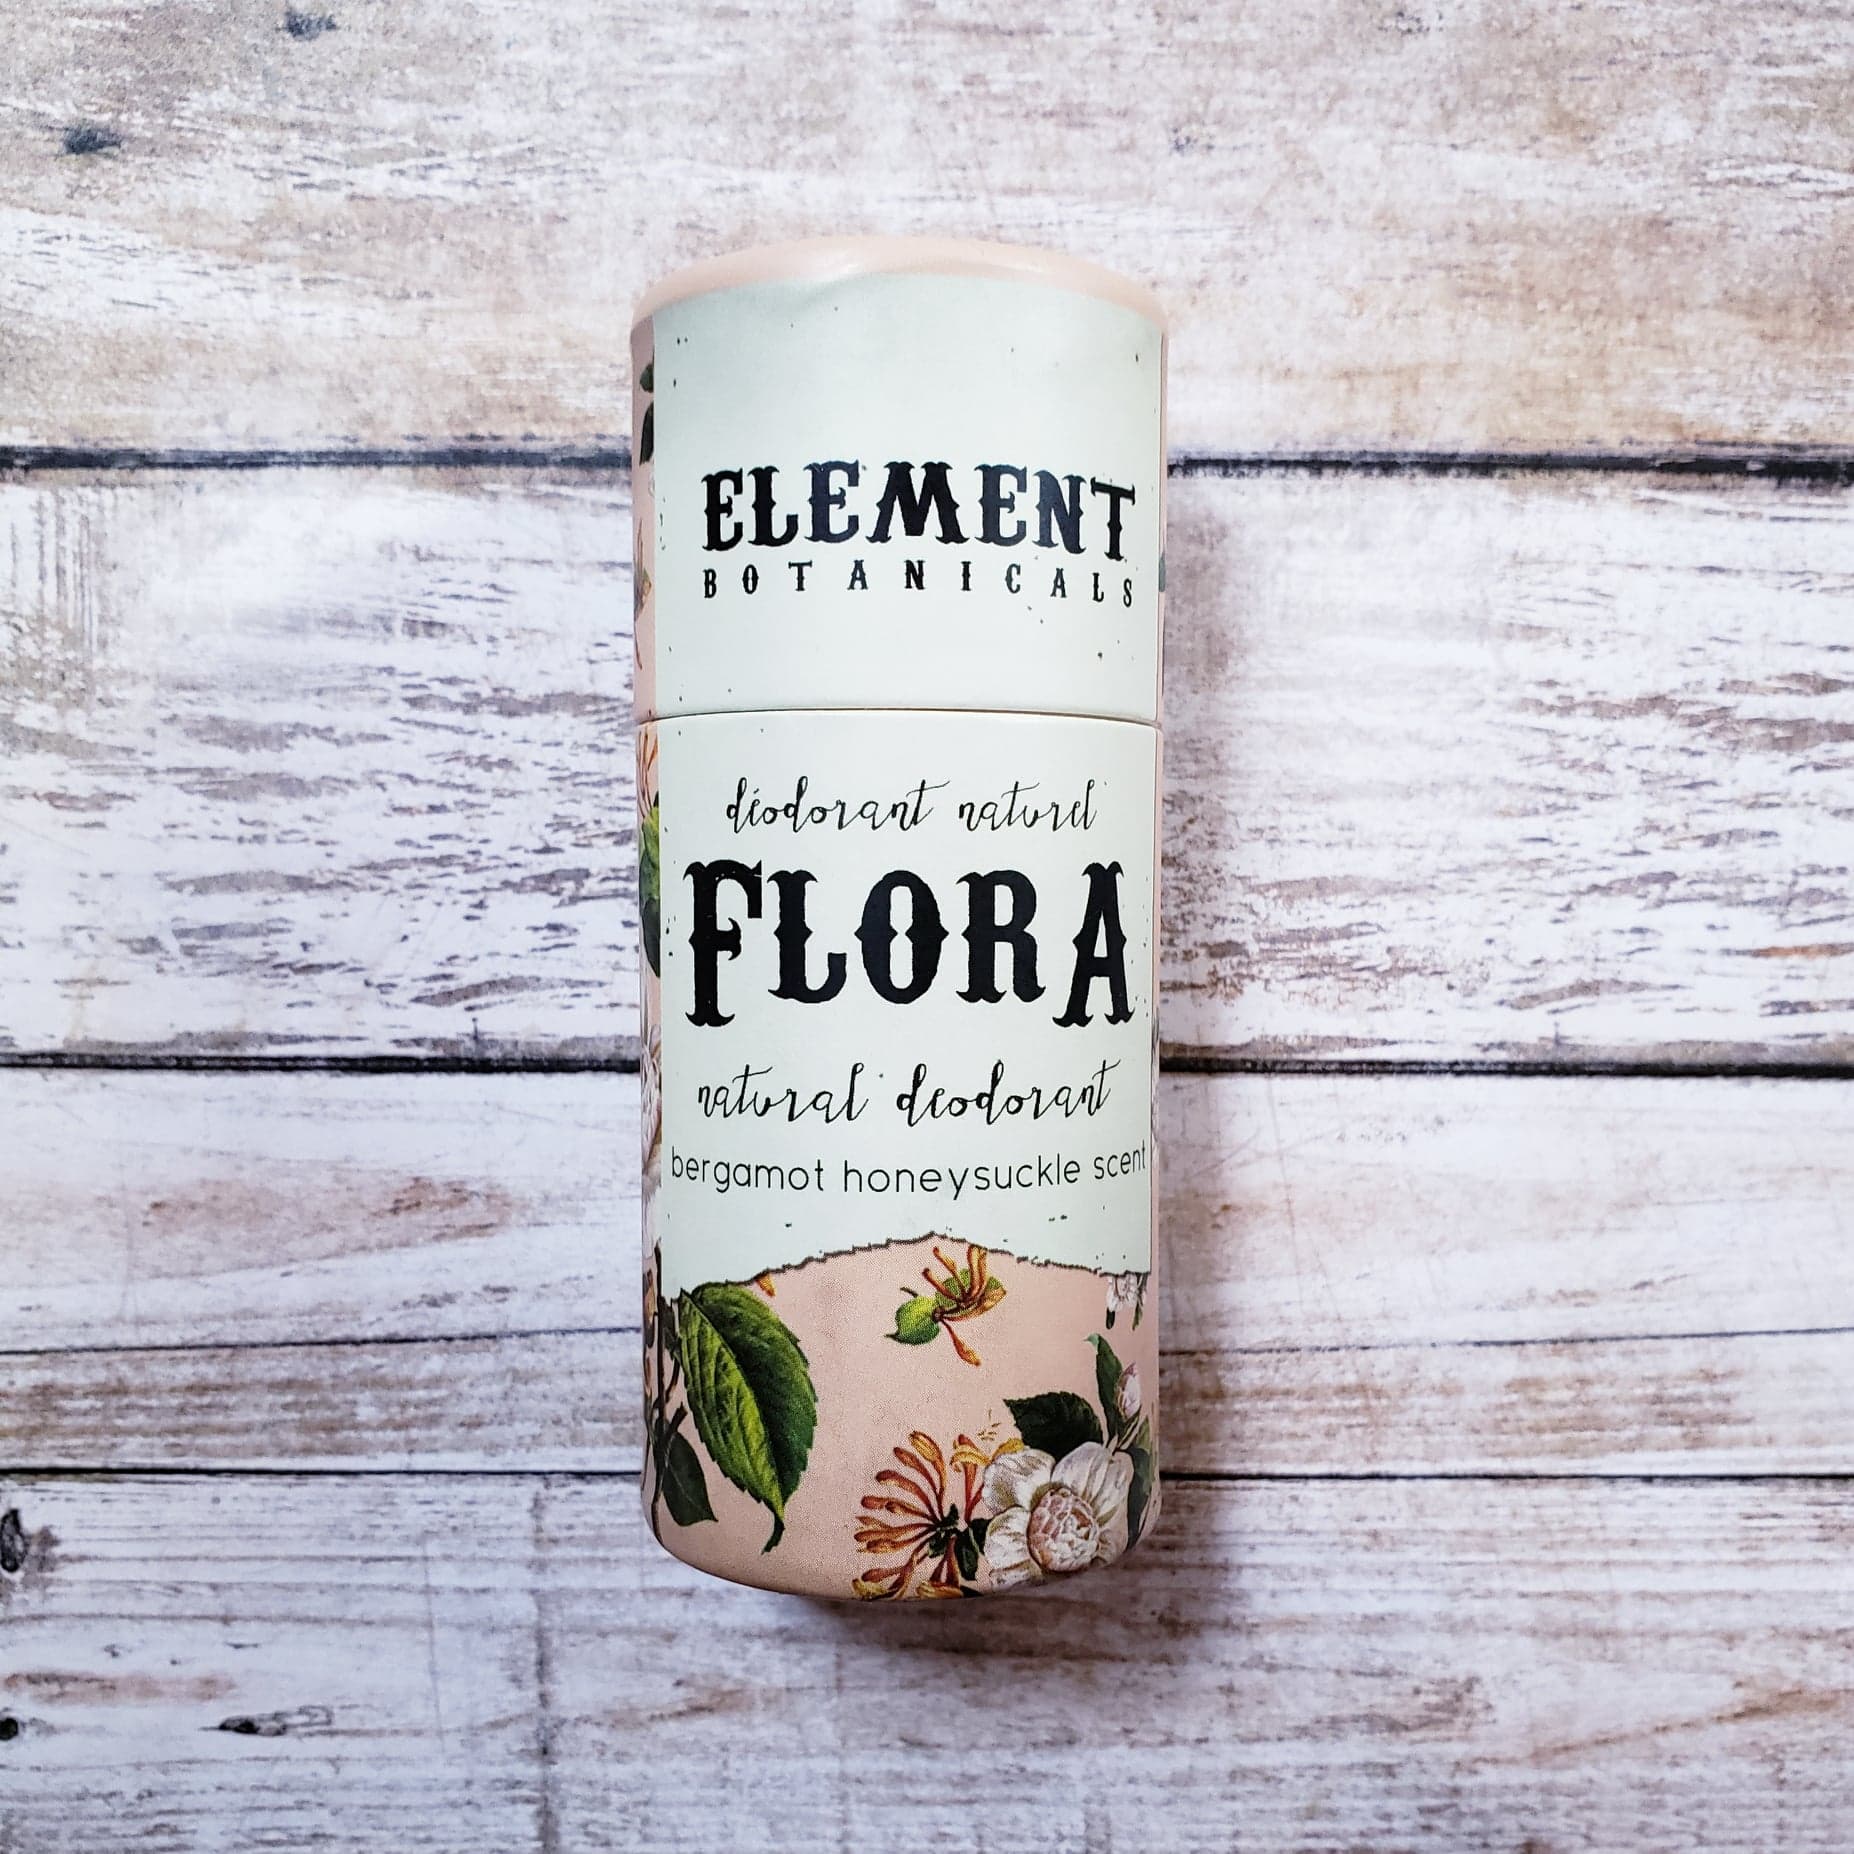 Flora Deodorant